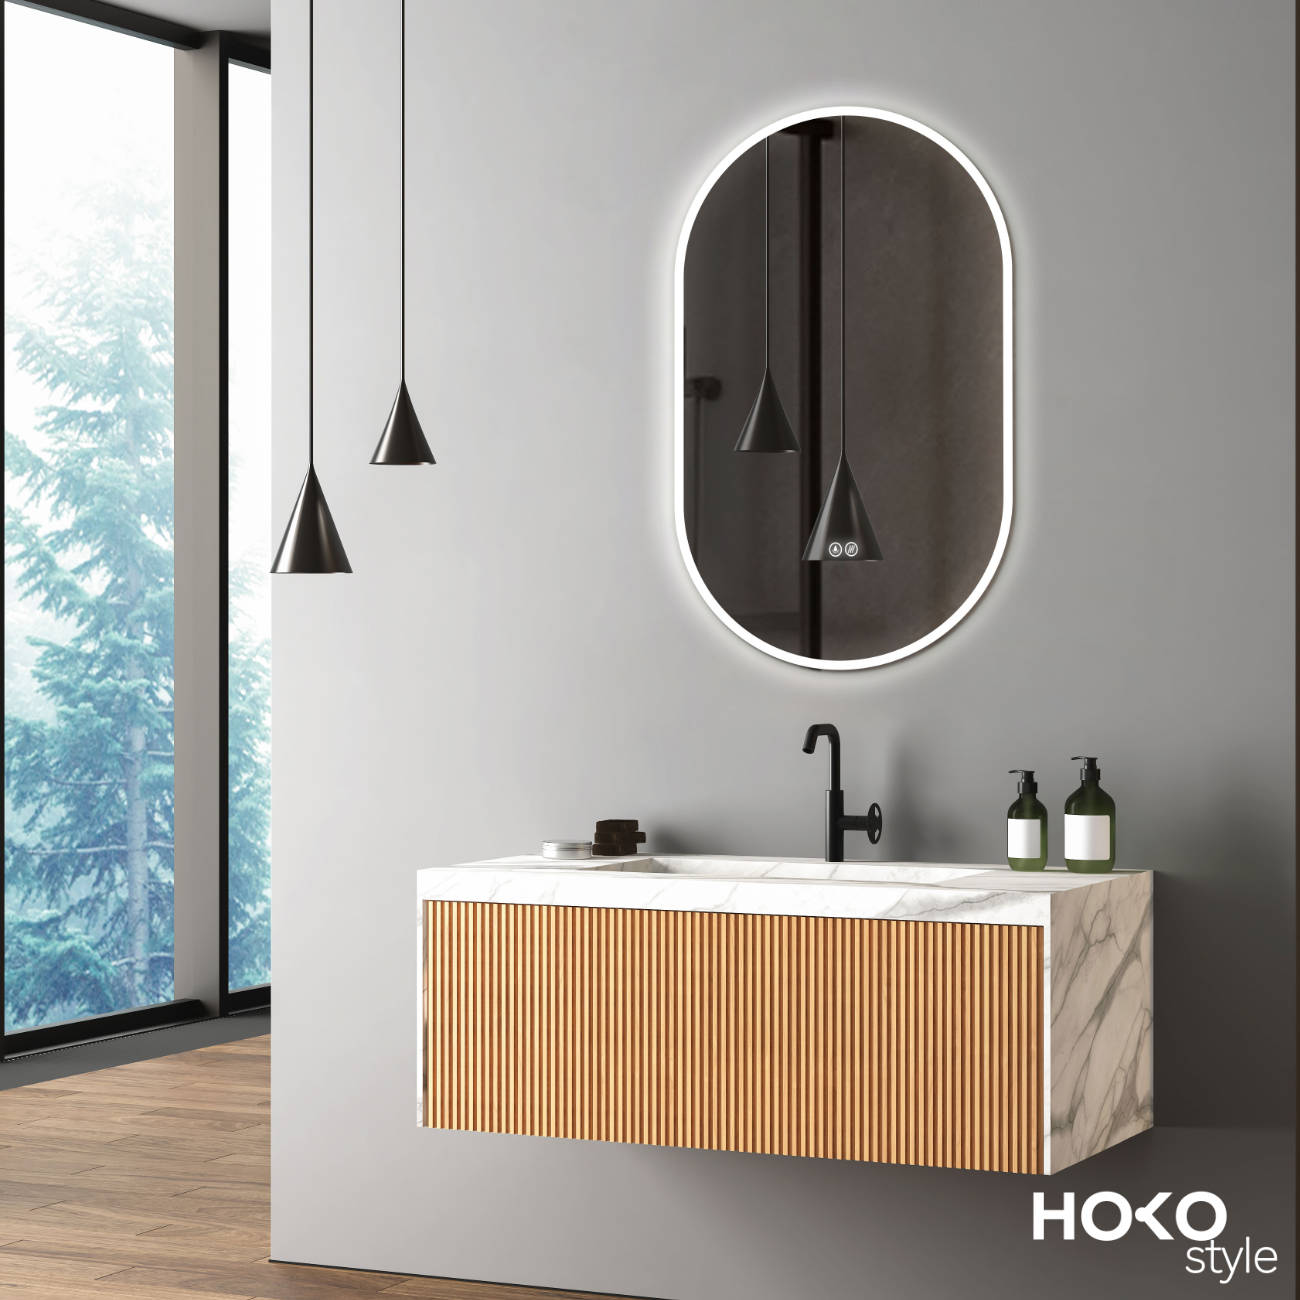 ANTI-FOG LED oval bathroom mirror with matt white frame, light color change